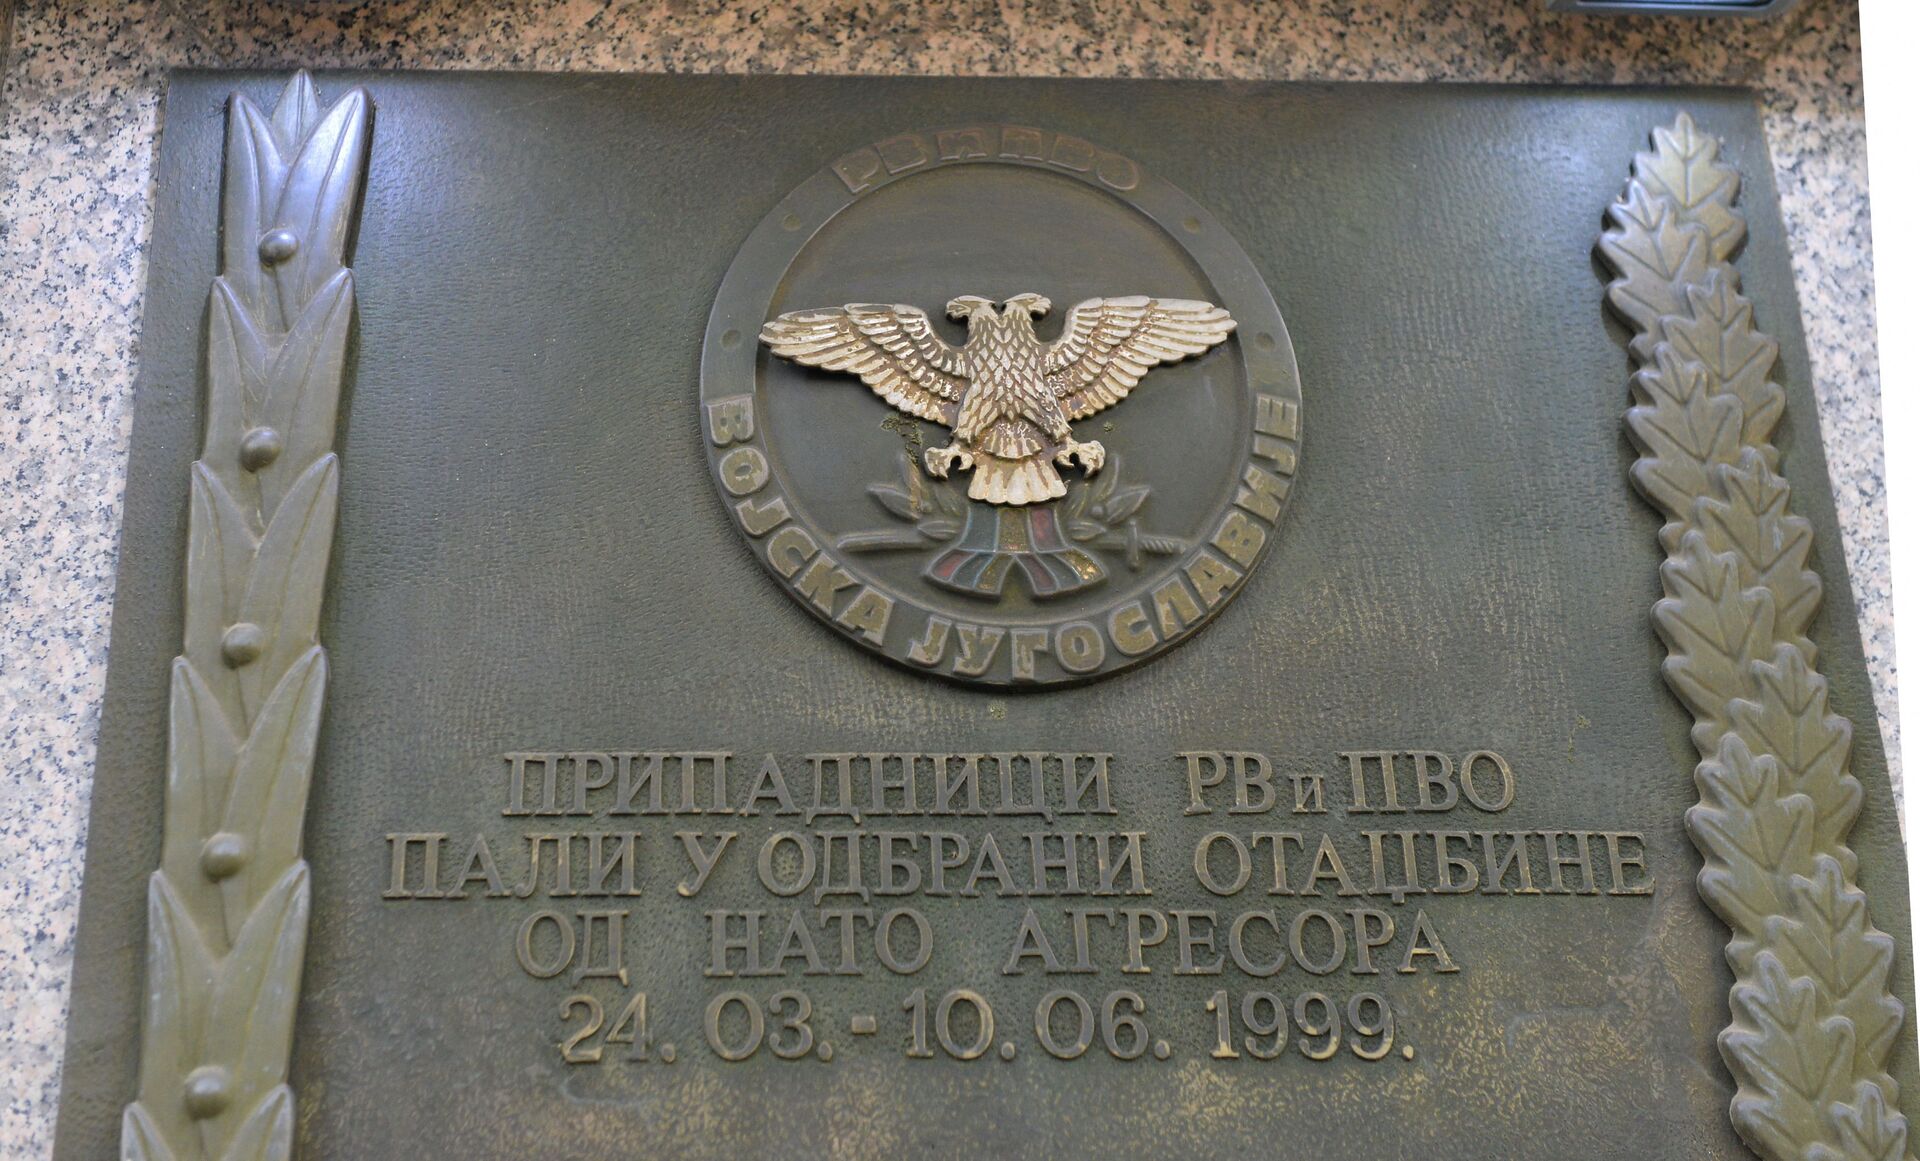 Овако је НАТО рушио Београд /фото/ - Sputnik Србија, 1920, 24.03.2021